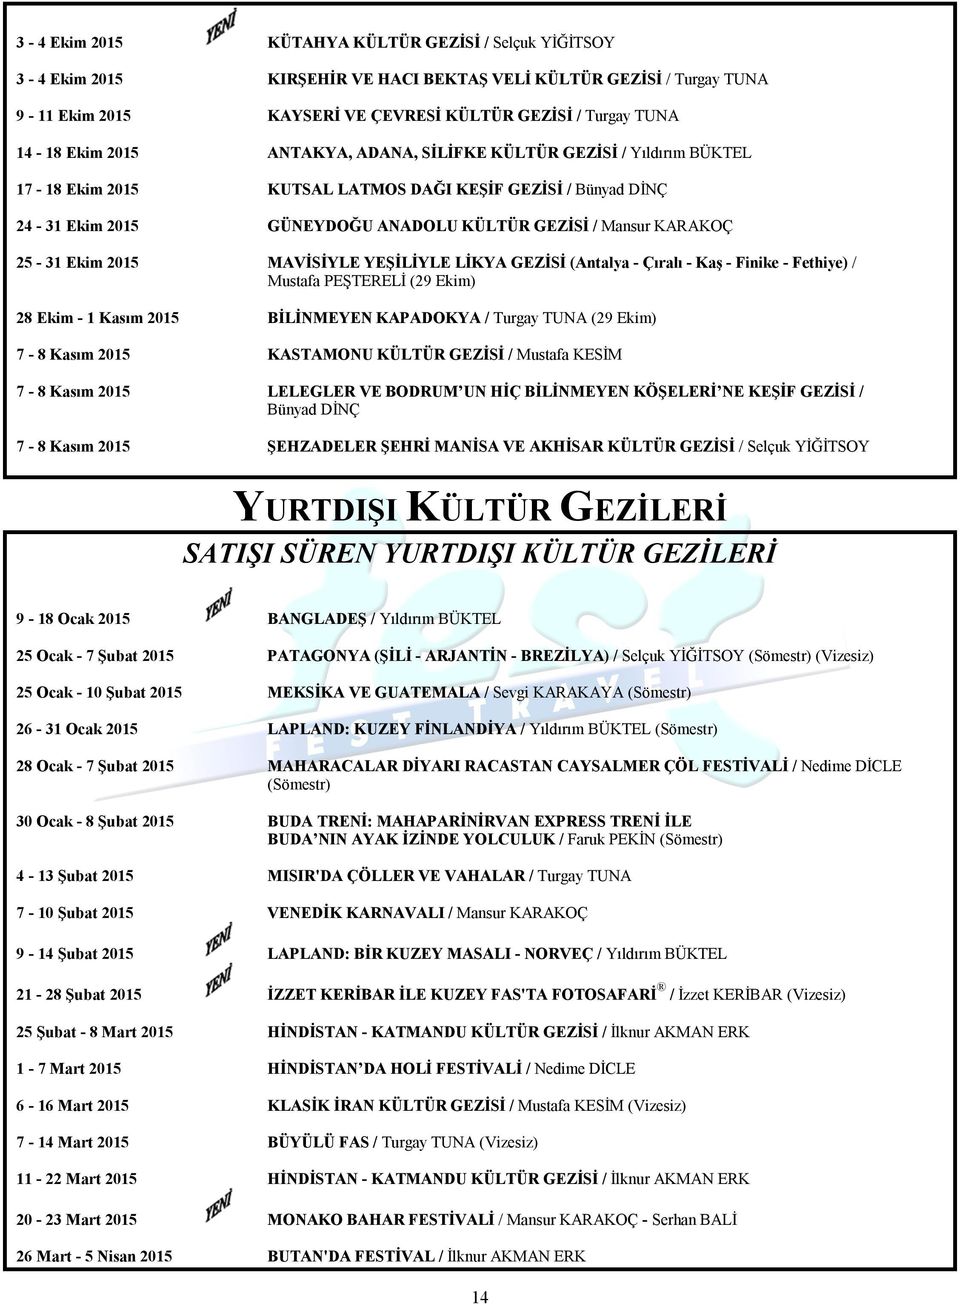 2015 MAVİSİYLE YEŞİLİYLE LİKYA GEZİSİ (Antalya - Çıralı - Kaş - Finike - Fethiye) / Mustafa PEŞTERELİ (29 Ekim) 28 Ekim - 1 Kasım 2015 BİLİNMEYEN KAPADOKYA / Turgay TUNA (29 Ekim) 7-8 Kasım 2015